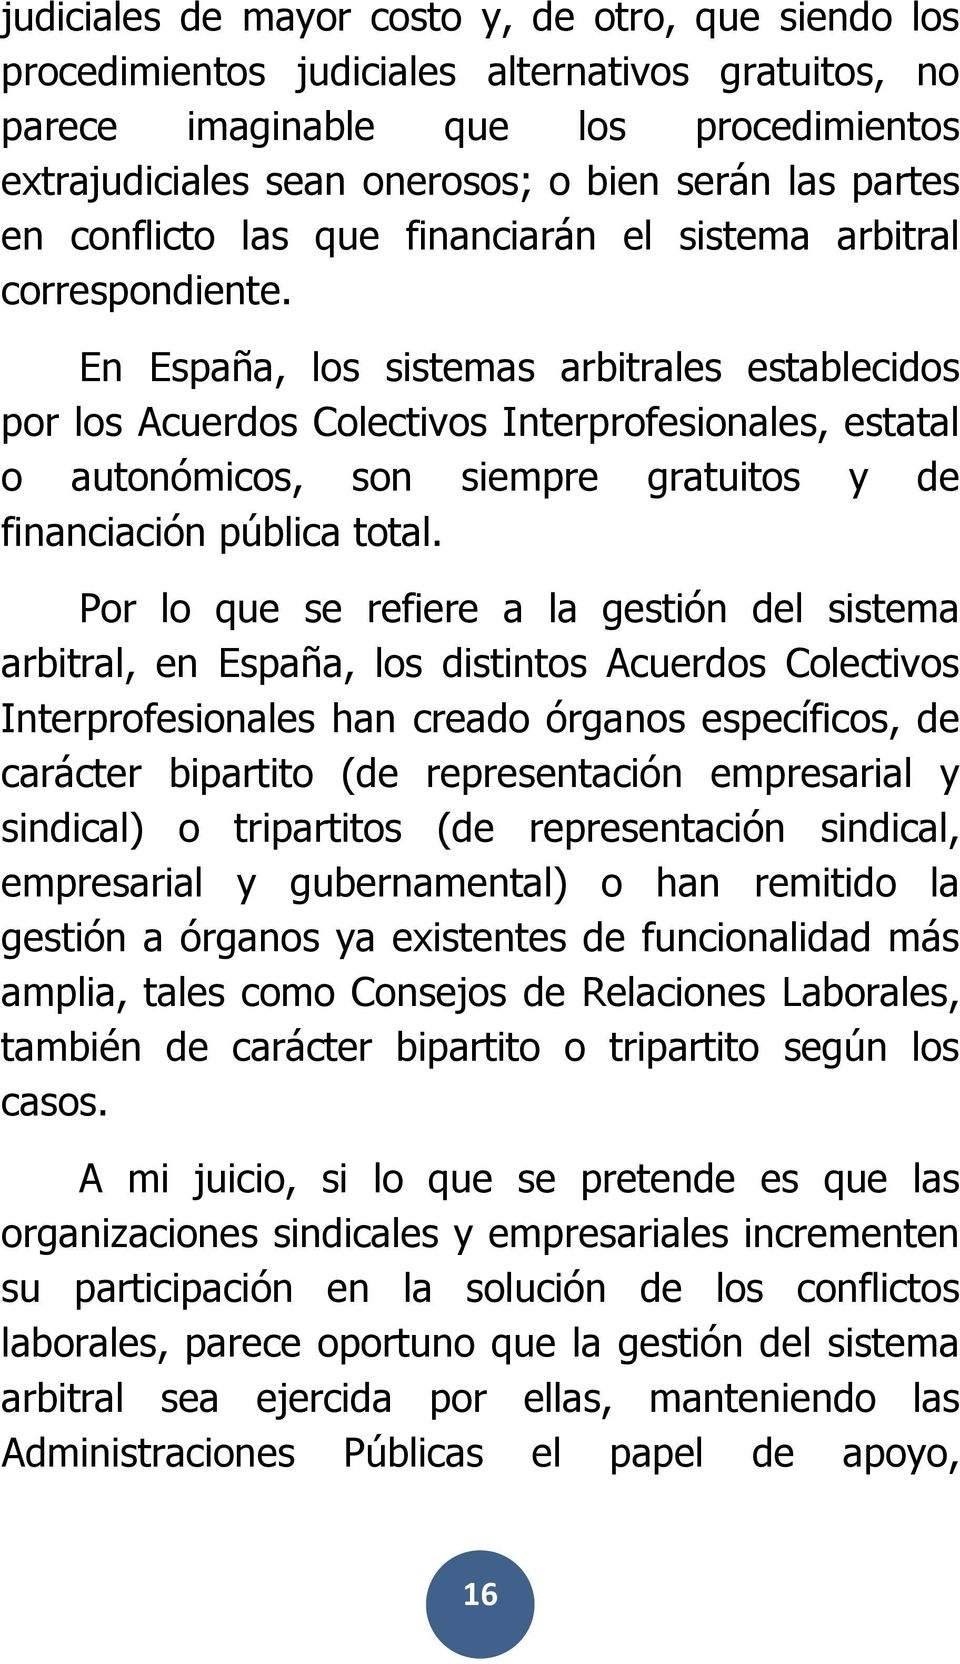 En España, los sistemas arbitrales establecidos por los Acuerdos Colectivos Interprofesionales, estatal o autonómicos, son siempre gratuitos y de financiación pública total.